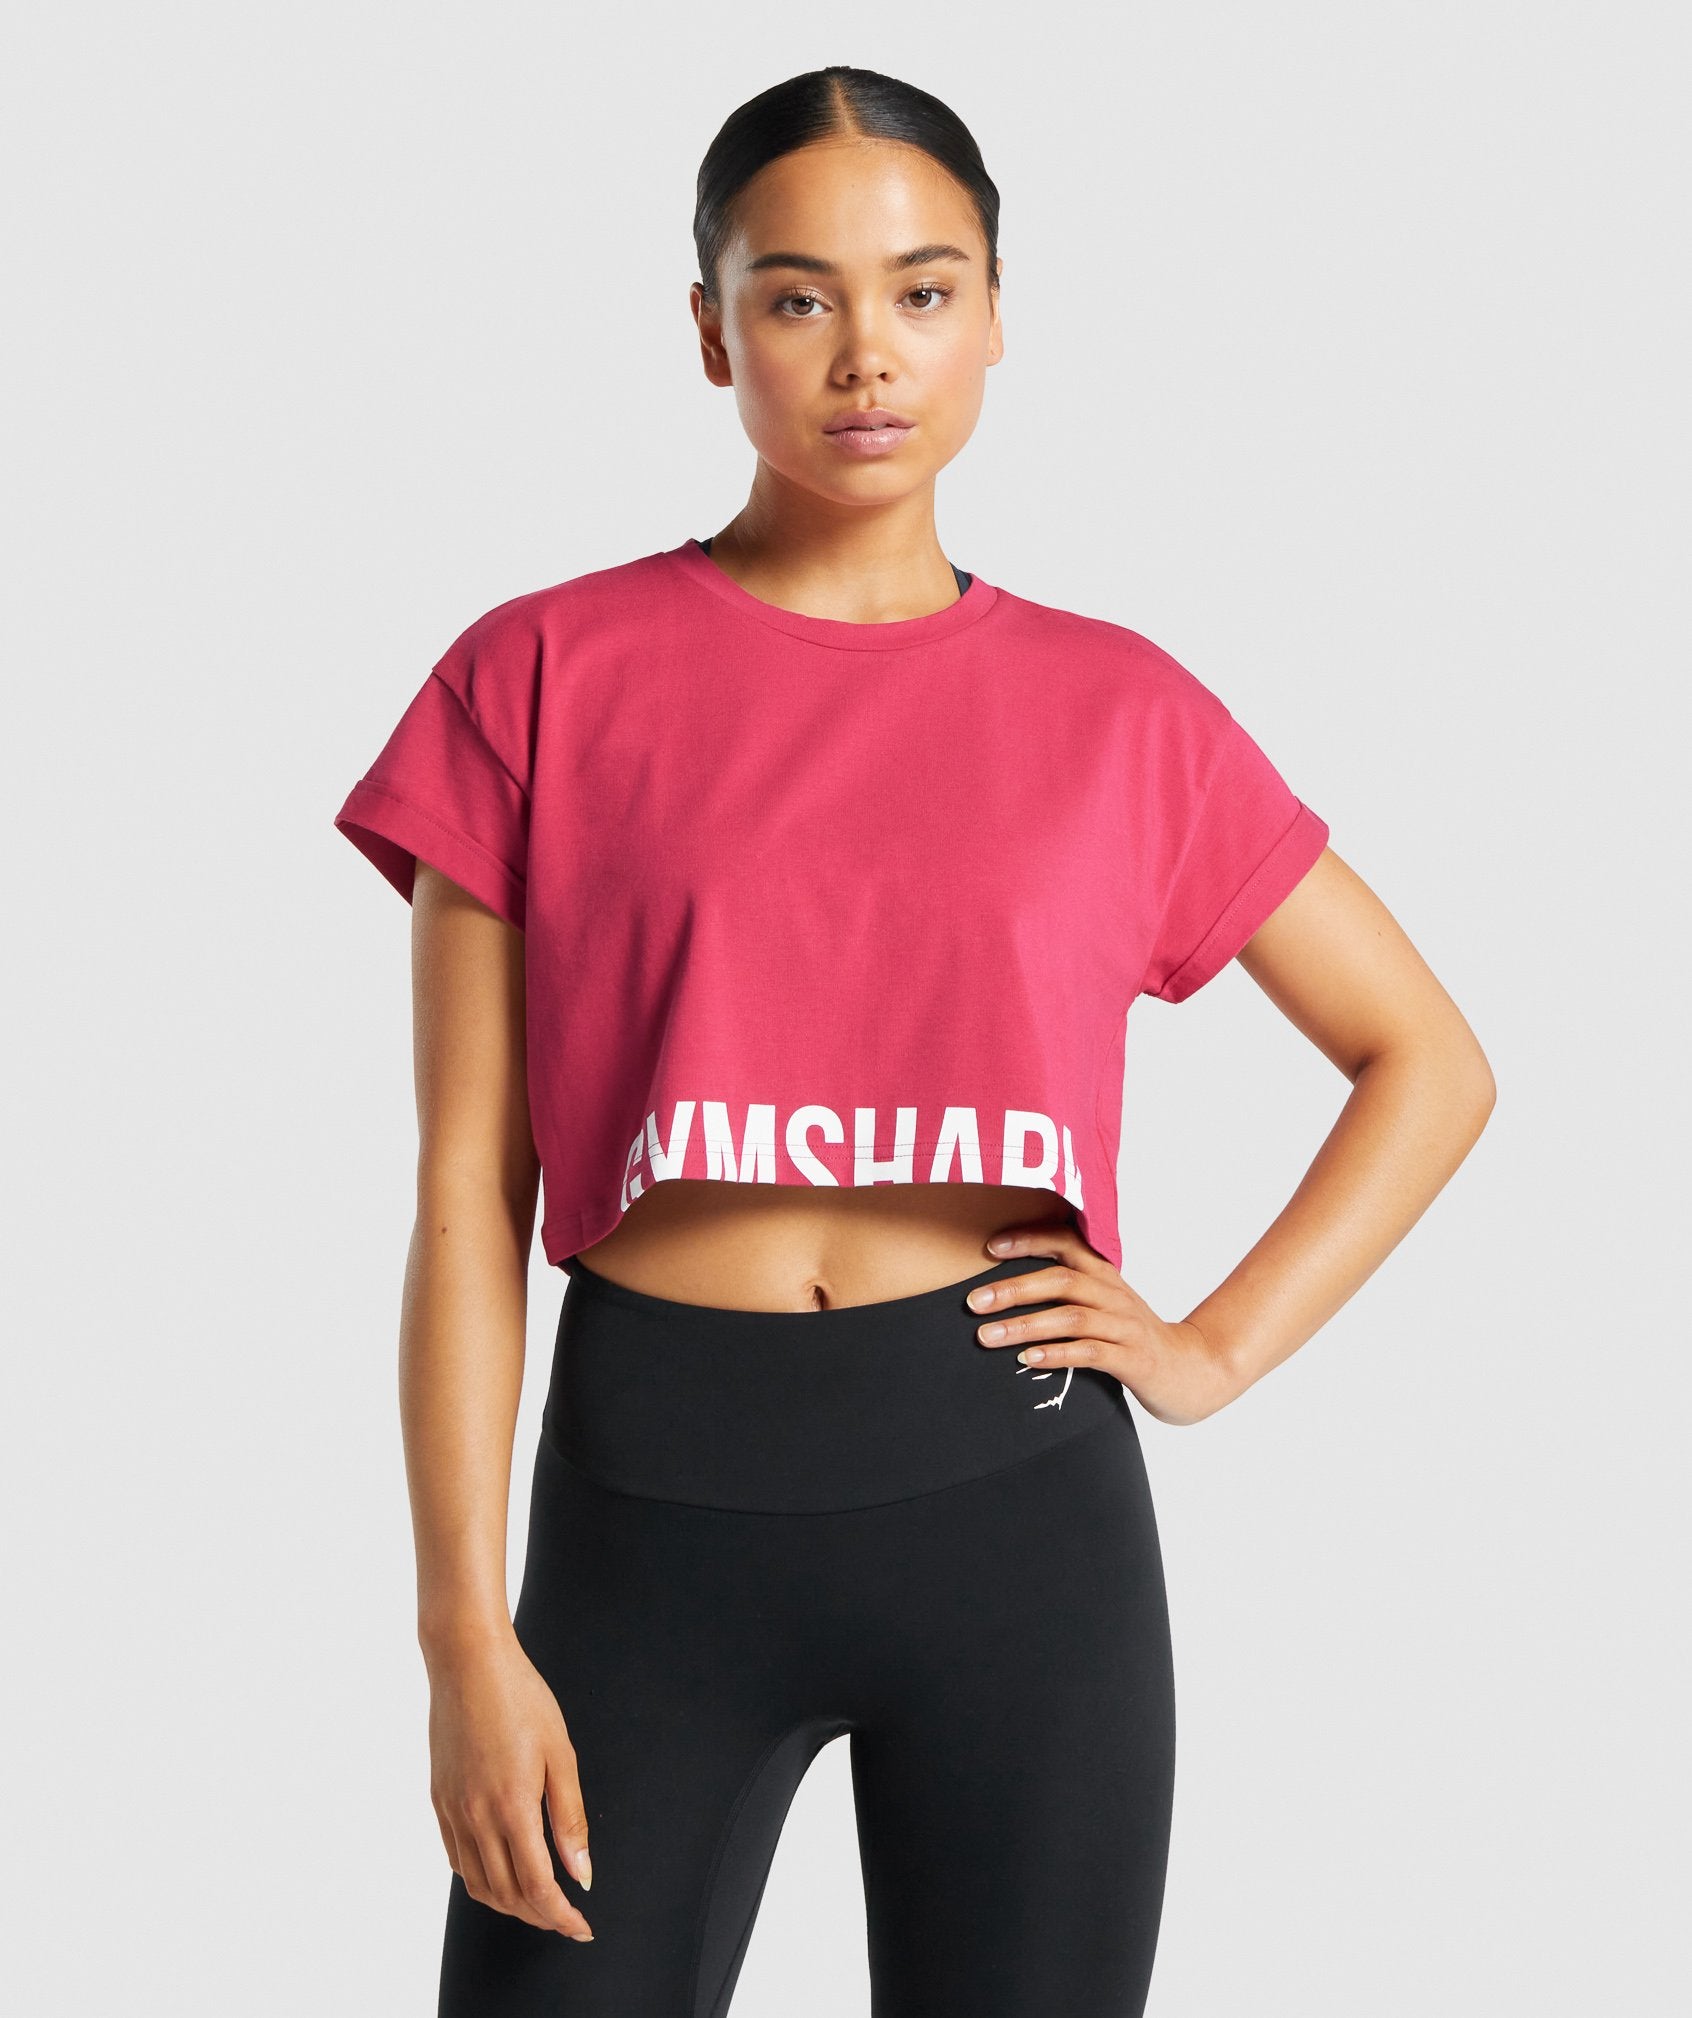 Gymshark Fraction Crop Top Women's Small Dark Red Workout Shirt